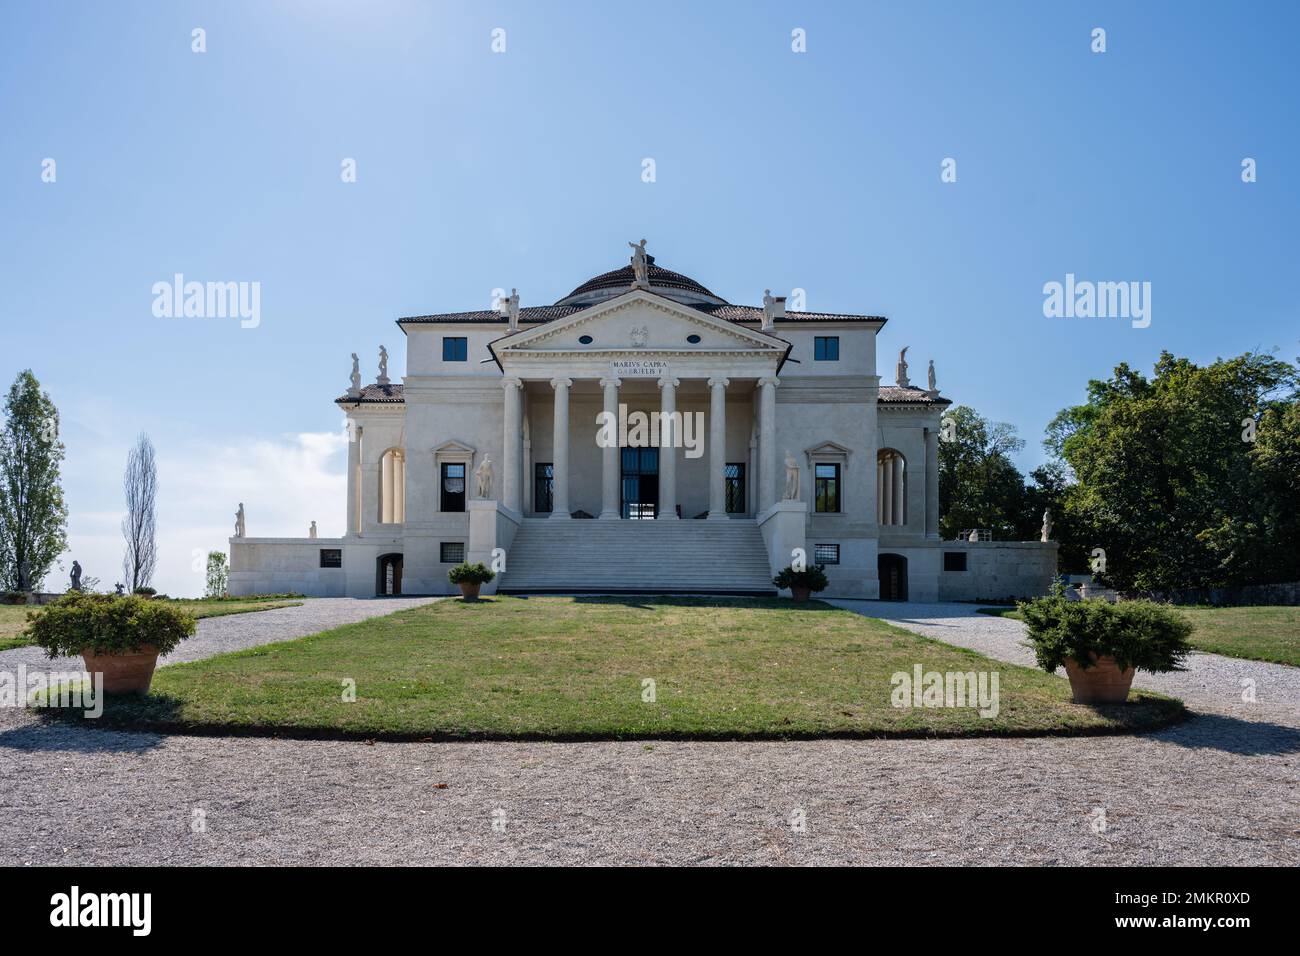 Vicenza, Italie - 13 août 2022: Villa la Rotonda ou Villa Almerico Capra Valmarana façade extérieure par Andrea Palladio, architecte de la Renaissance. Banque D'Images